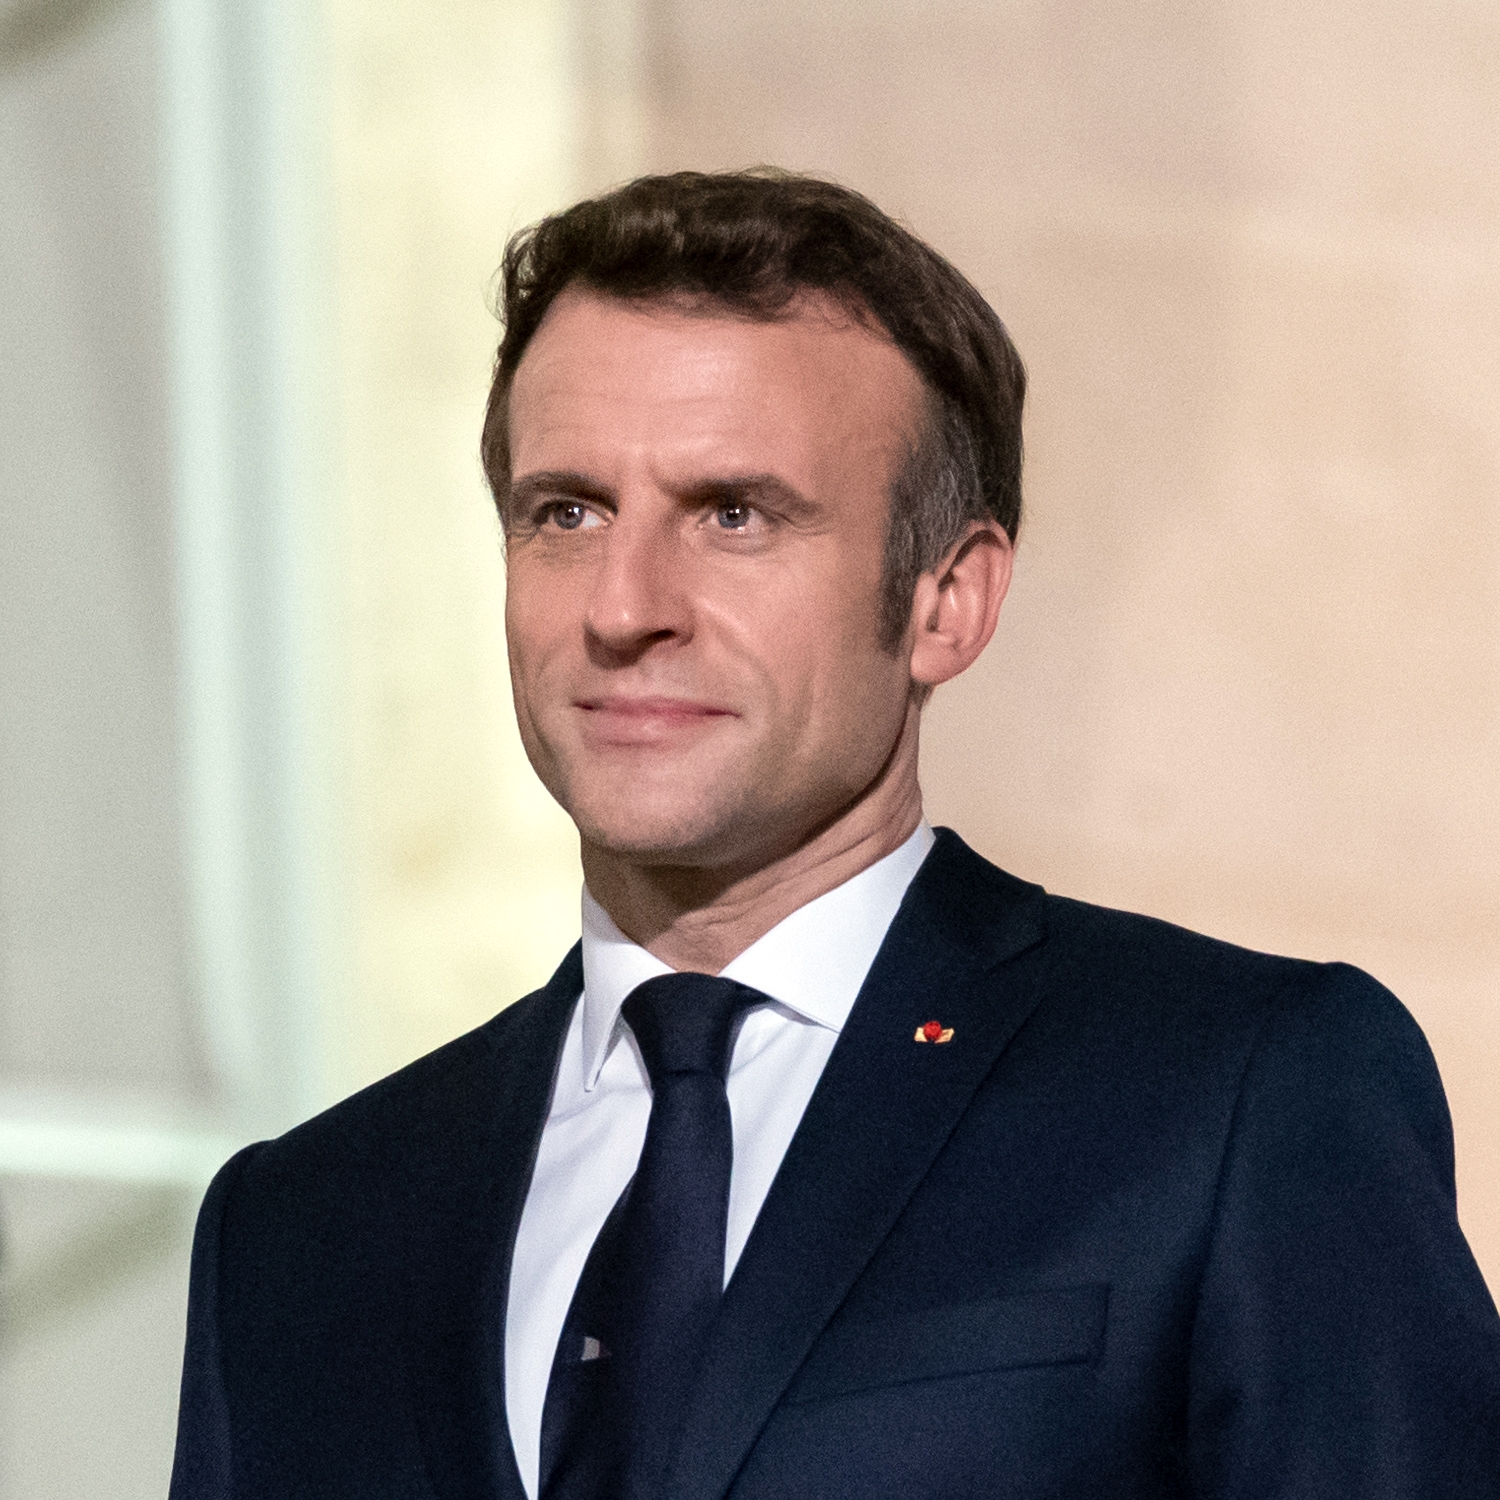     Emmanuel Macron : la campagne du Président sortant relayée en Martinique

